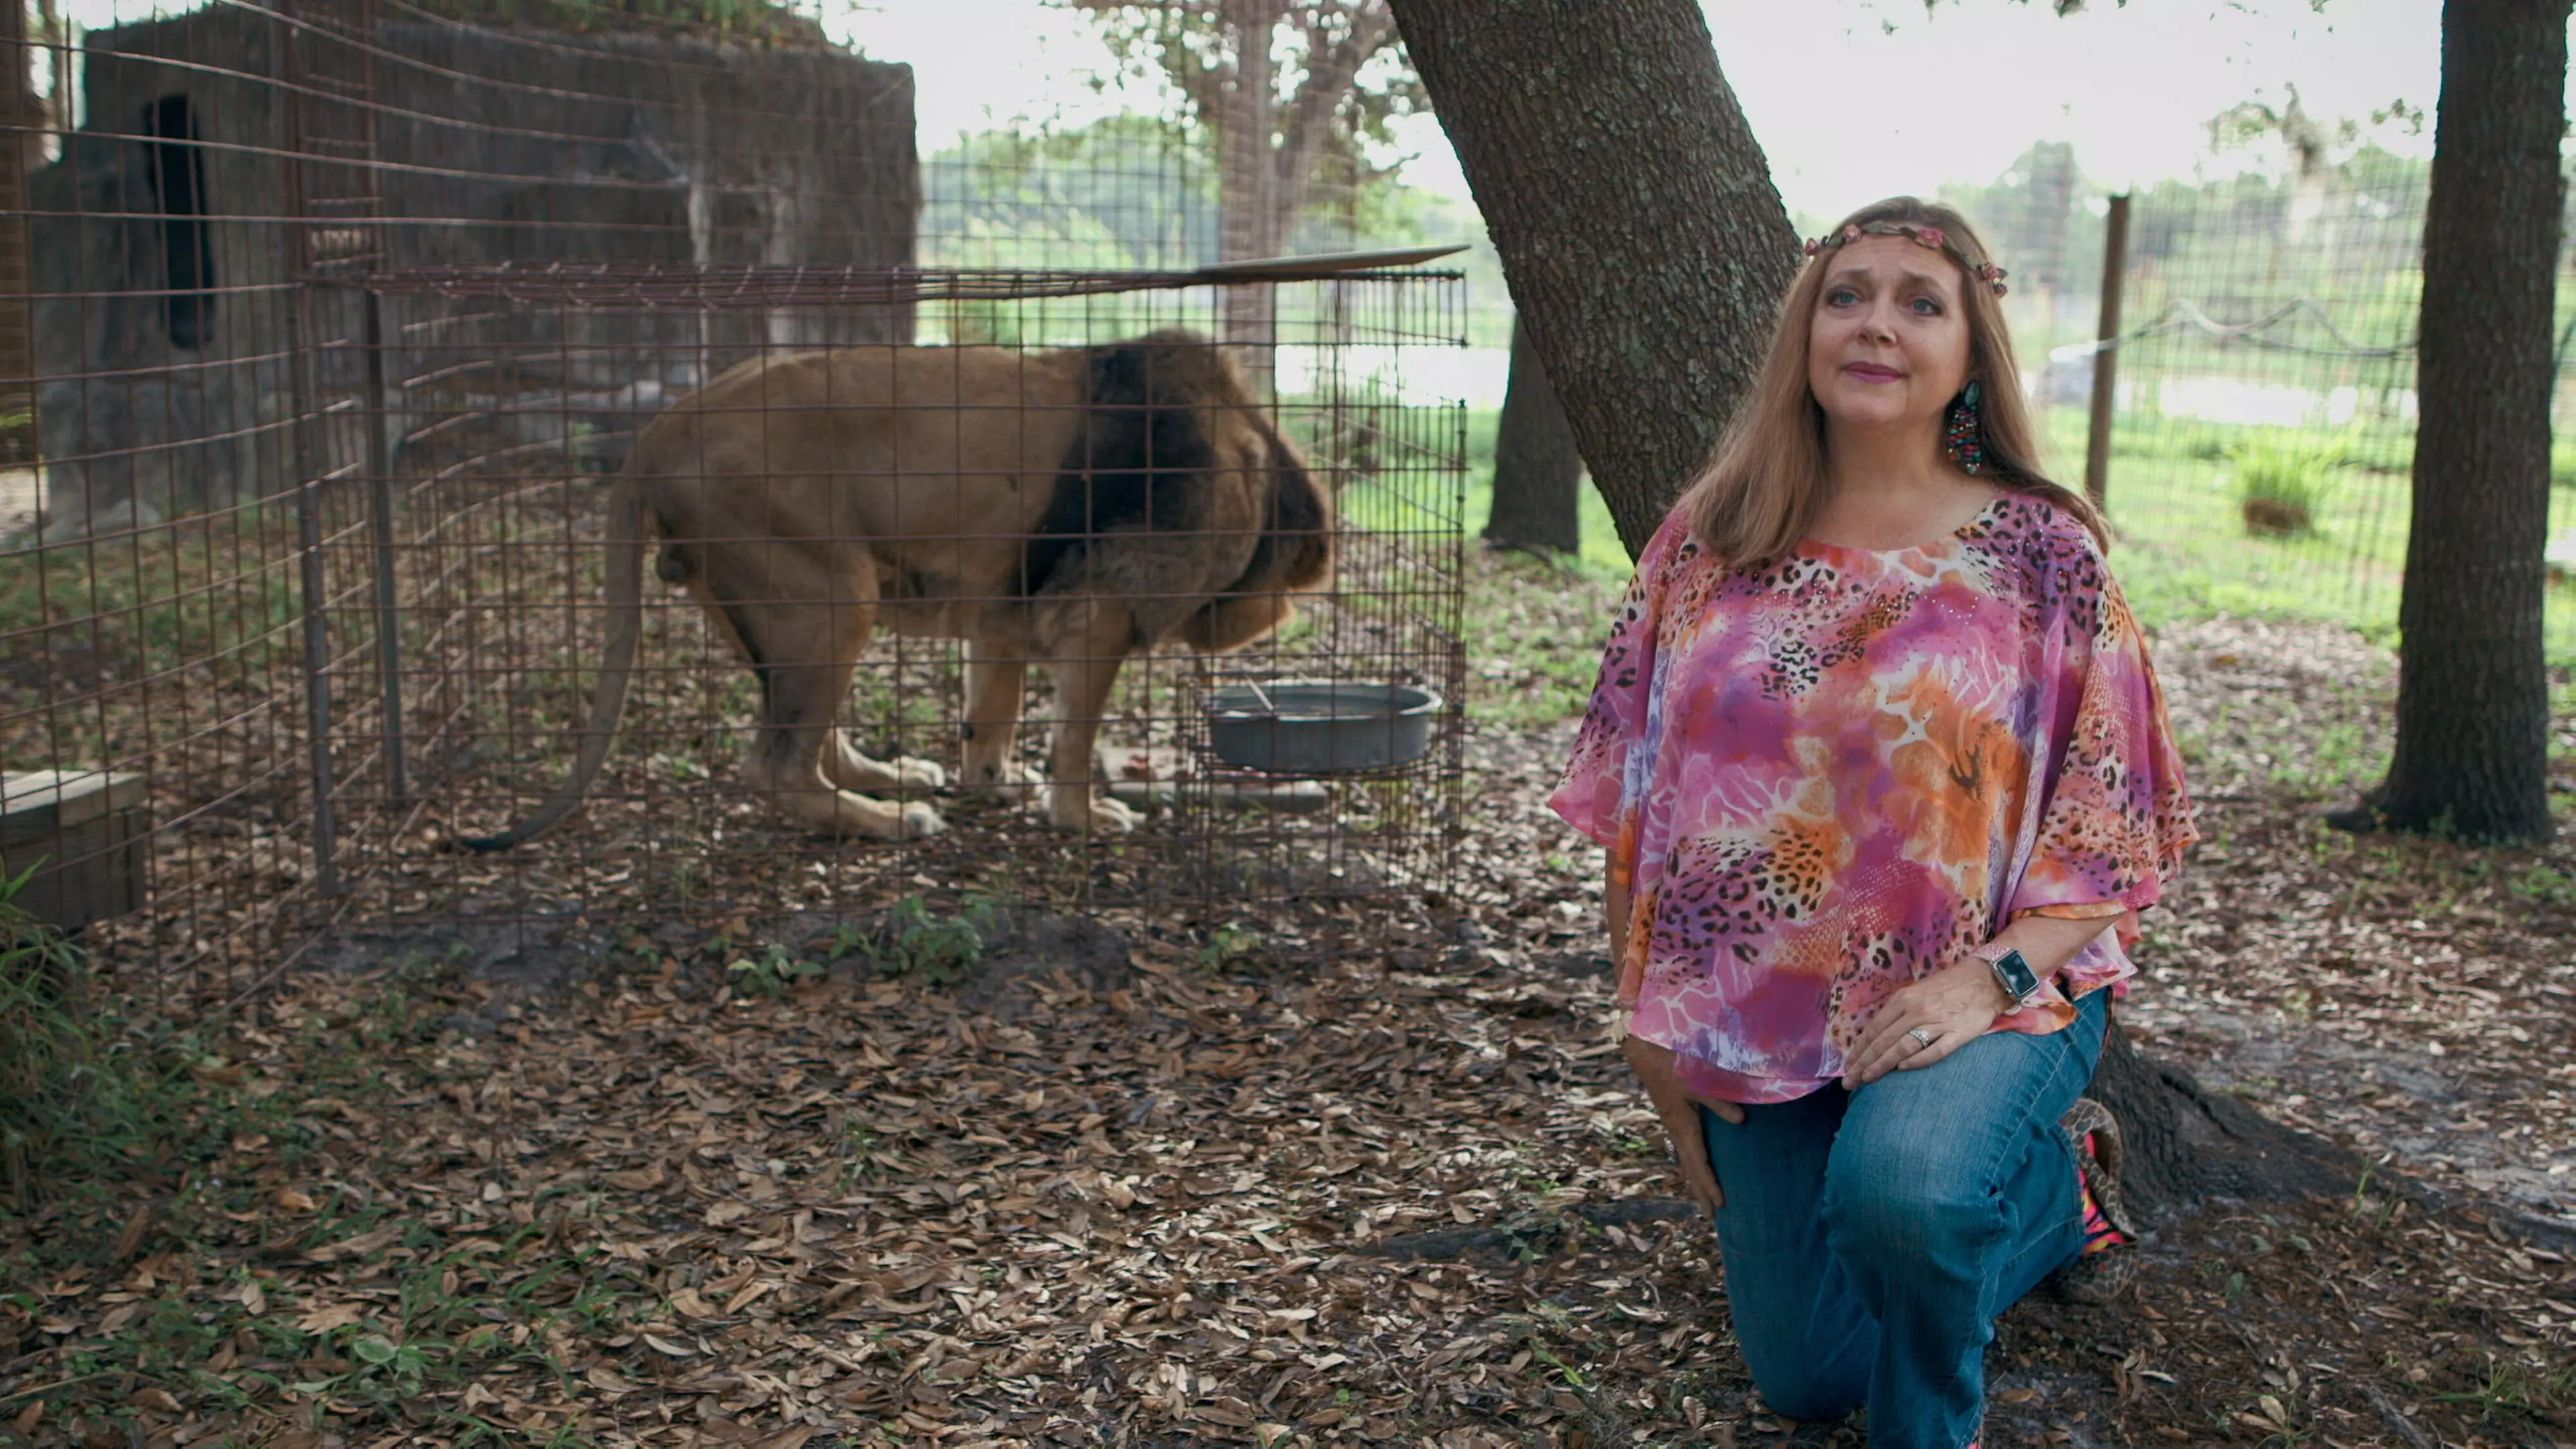 Carole Baskin at her sanctuary, Big Cat Rescue.